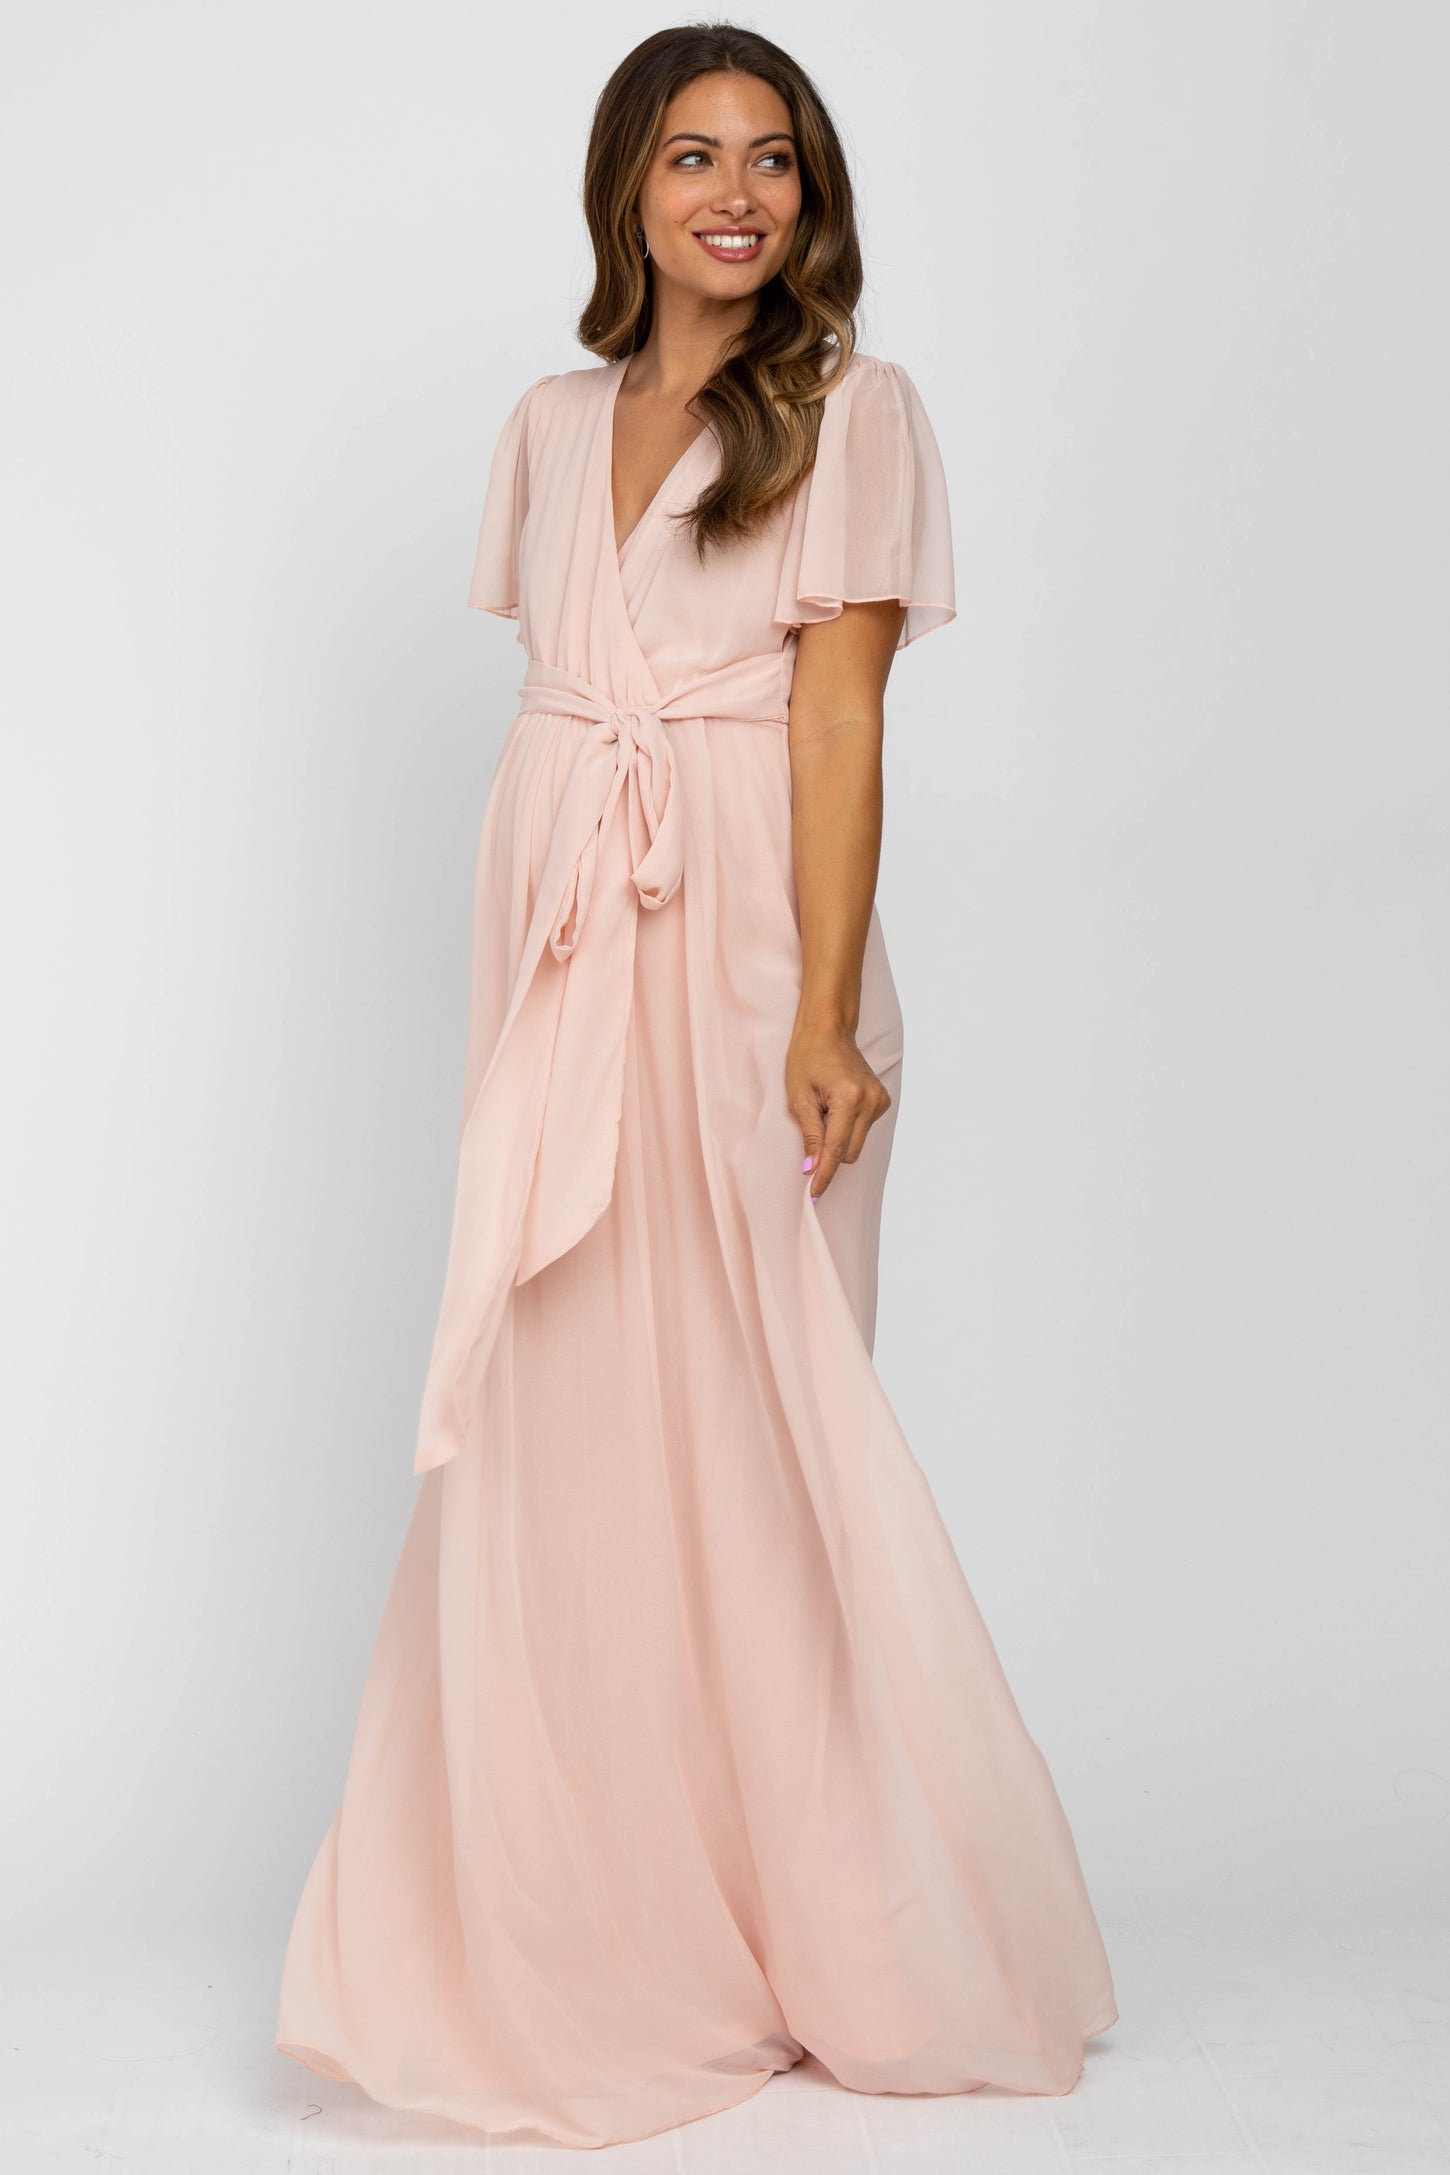 Light Pink Chiffon Short Sleeve Maternity Maxi Dress